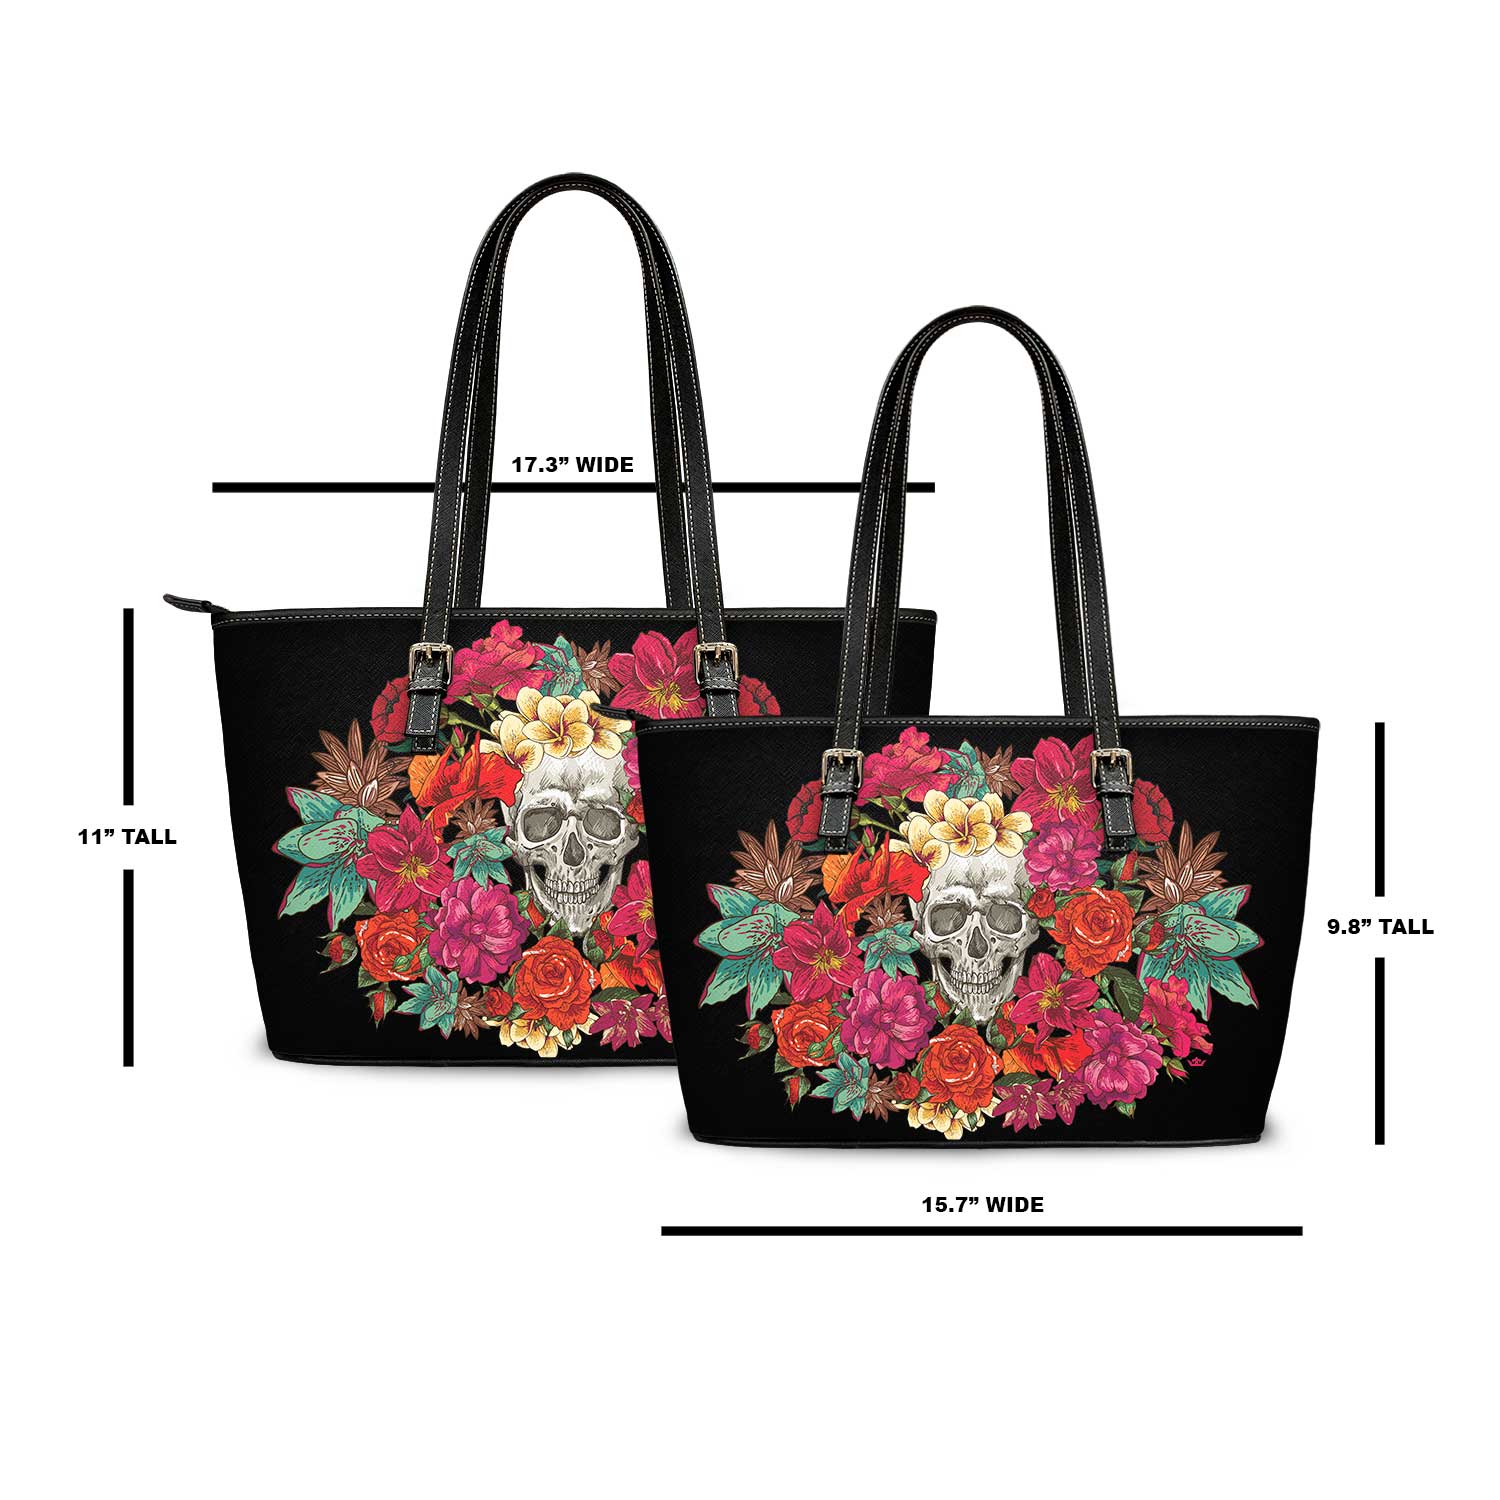 Memento Mori Floral Tote Bag (Black) - VENXARA®